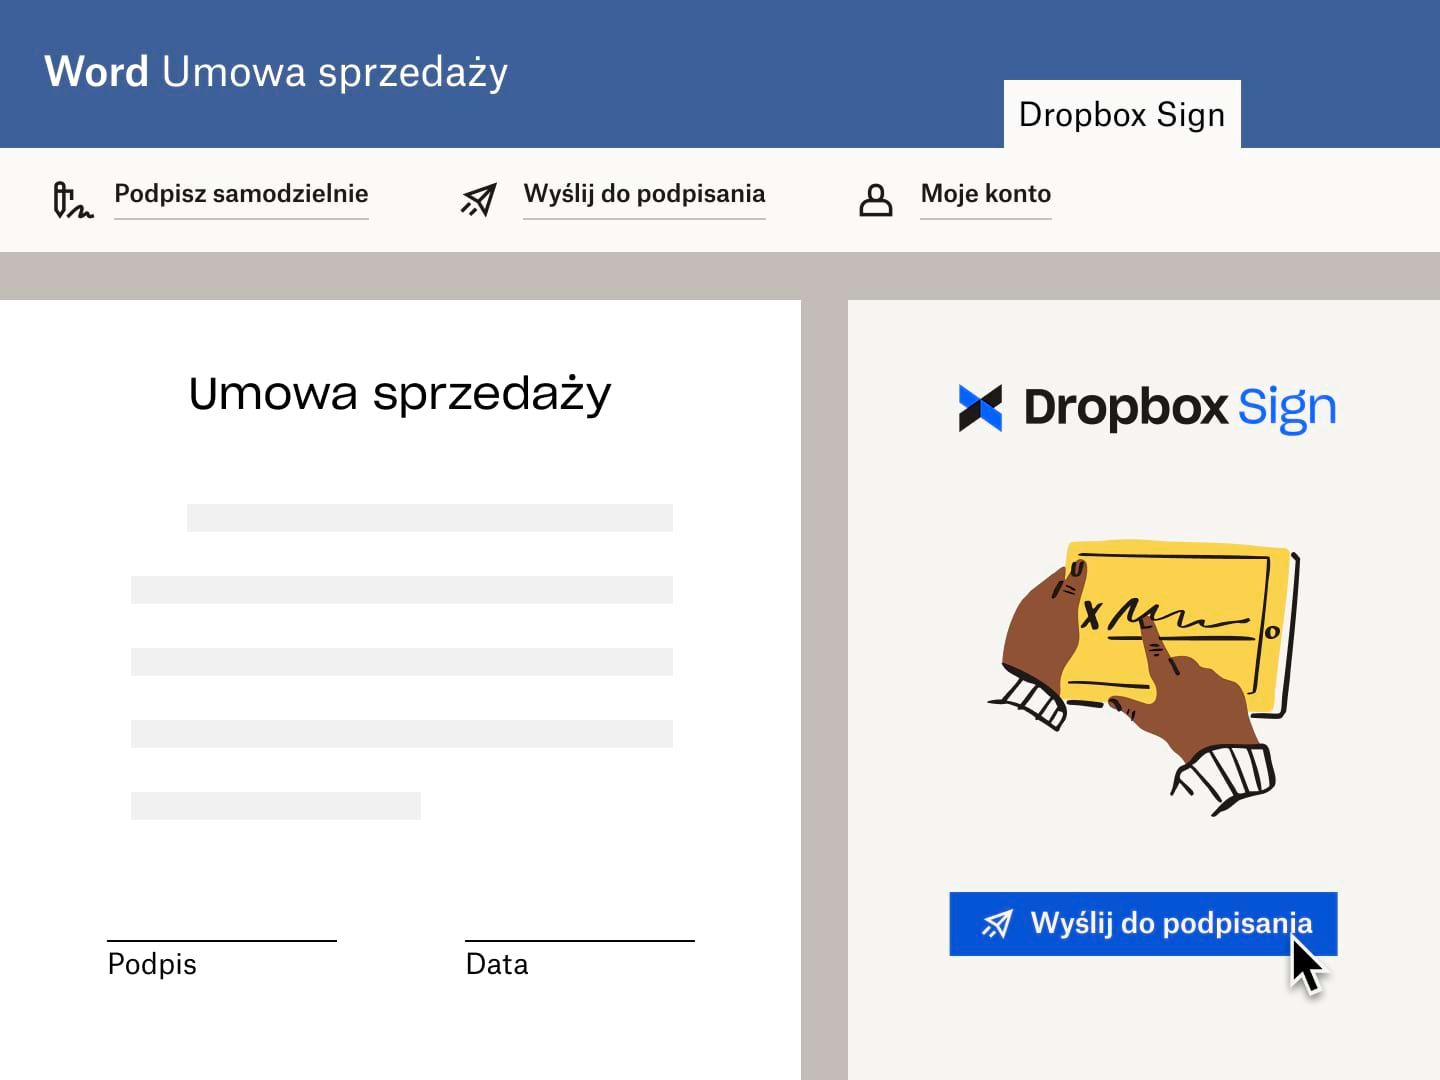 Użytkownik wysyła umowę sprzedaży w programie Microsoft Word z prośbą o podpis elektroniczny Dropbox Sign